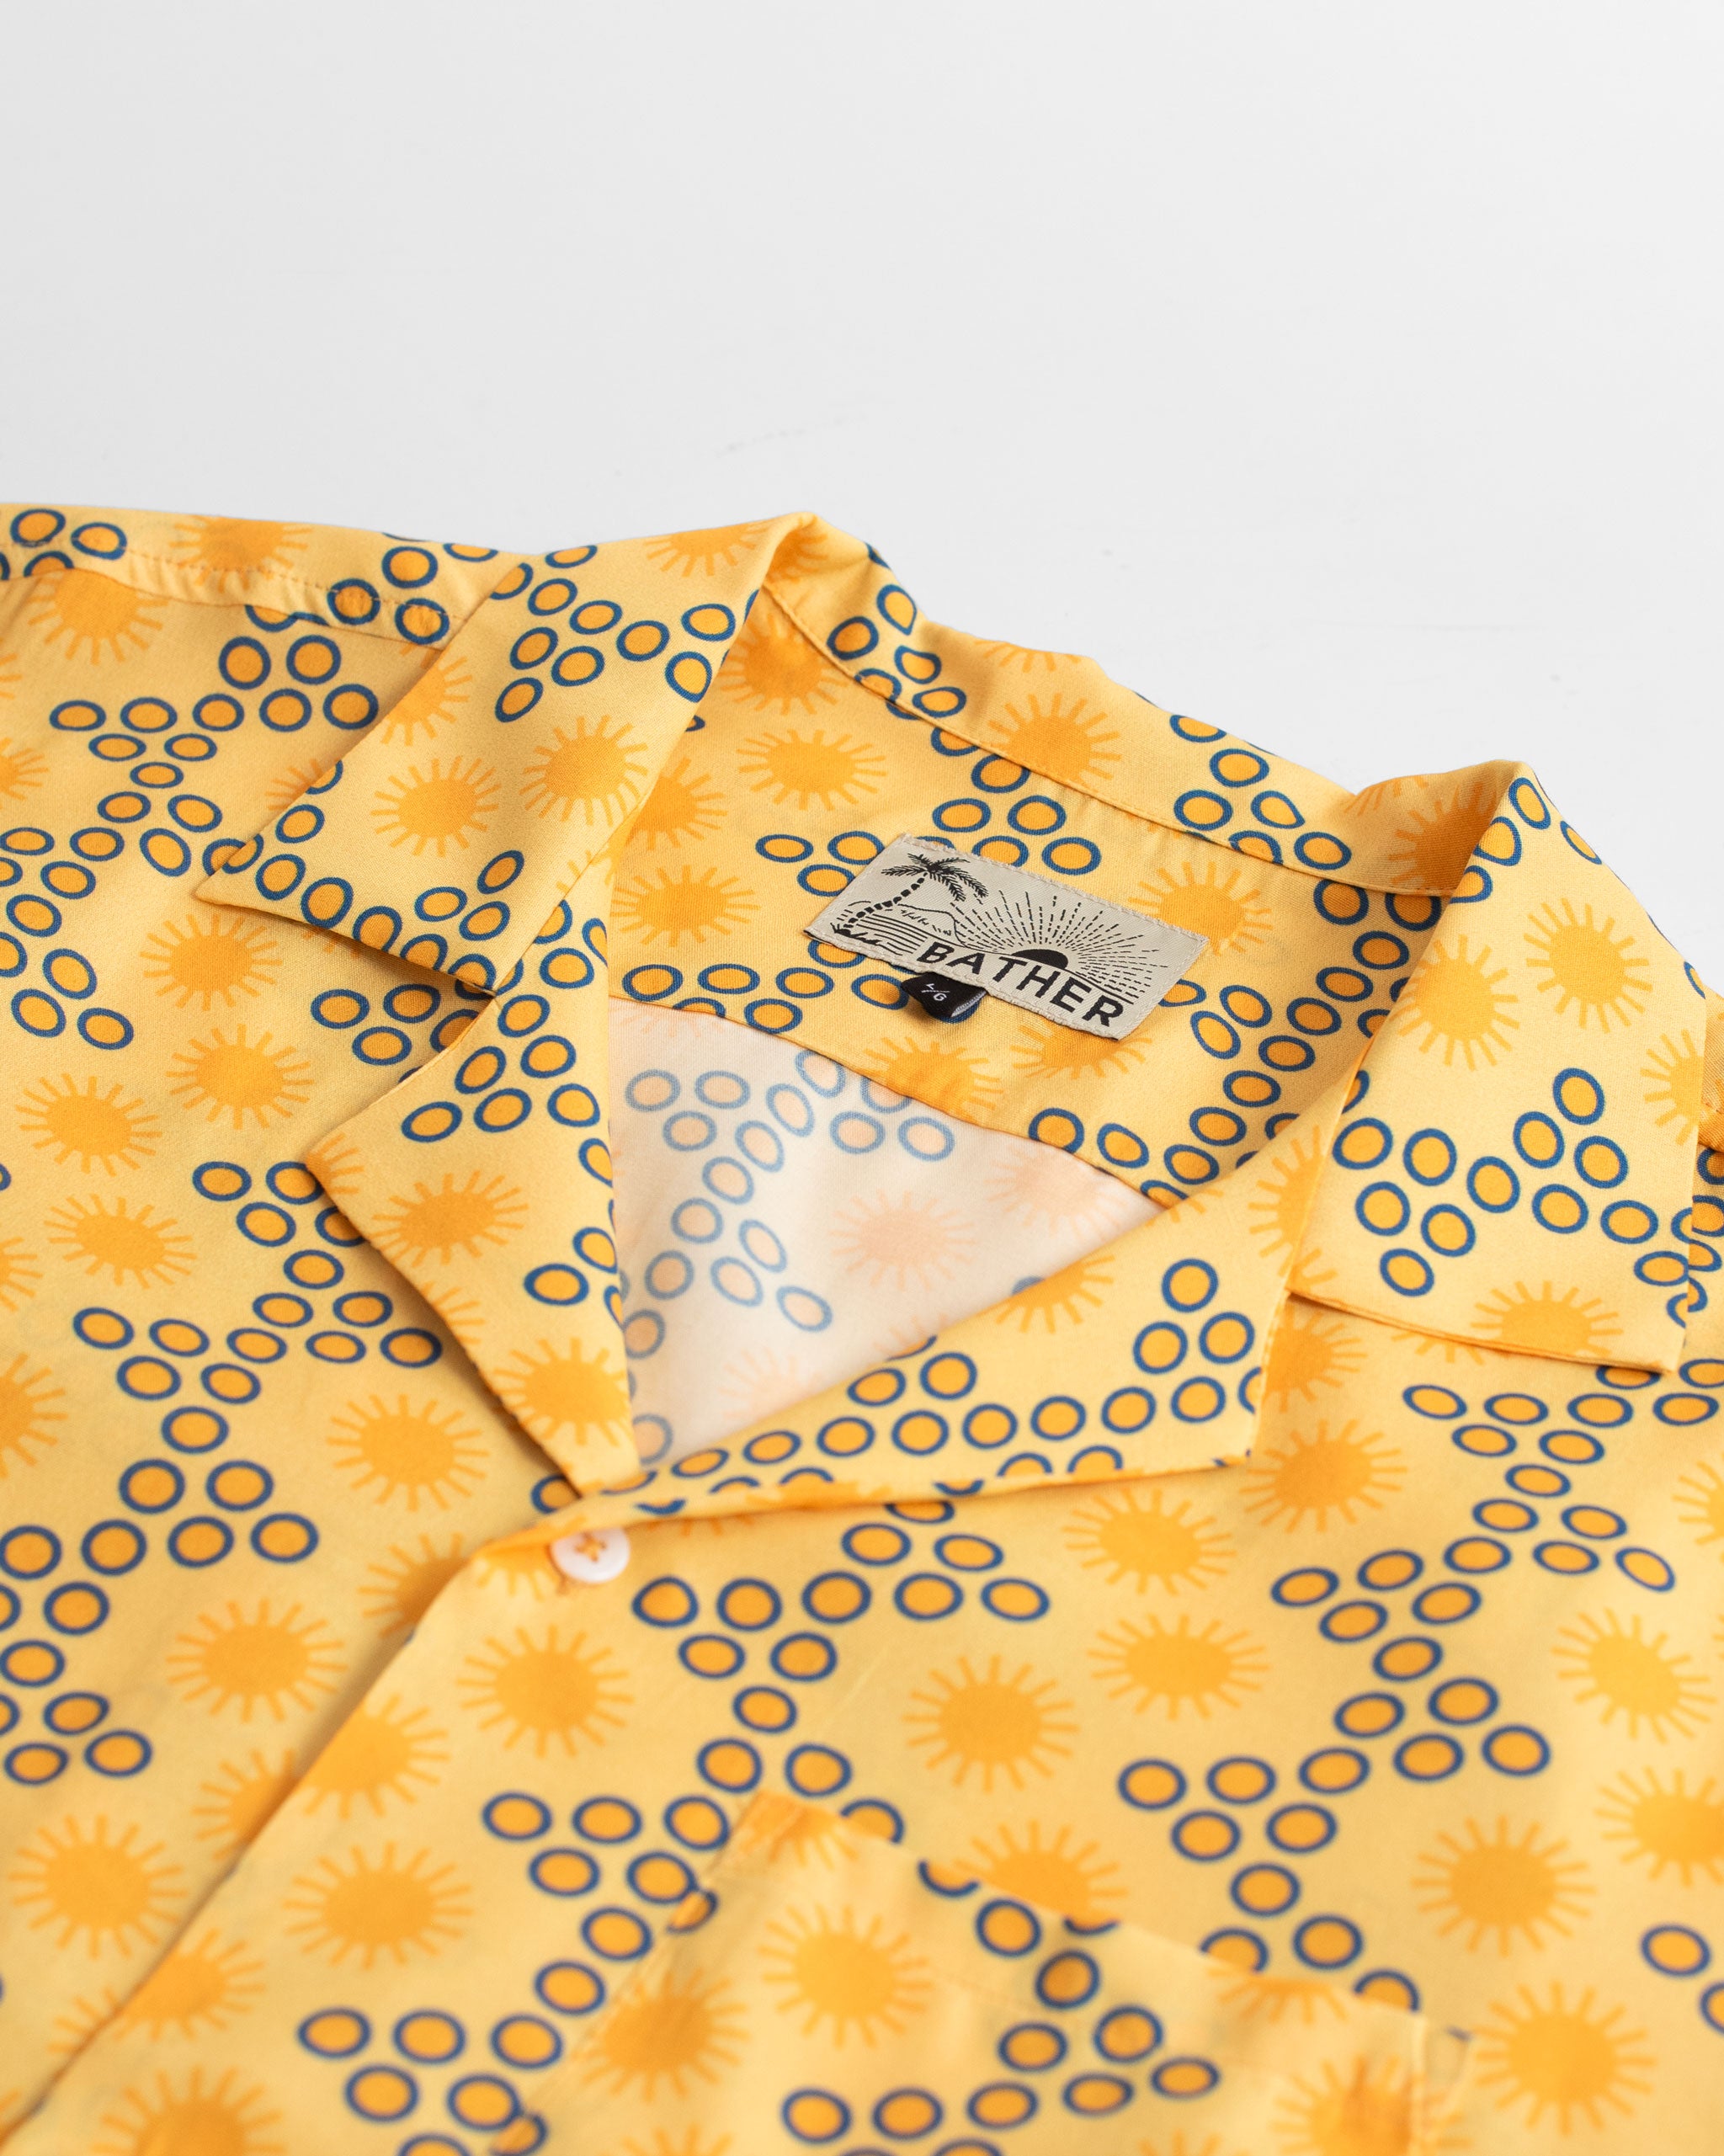 Collar close up shot of Yellow Disco Sun Graphic Rayon Camp Shirt